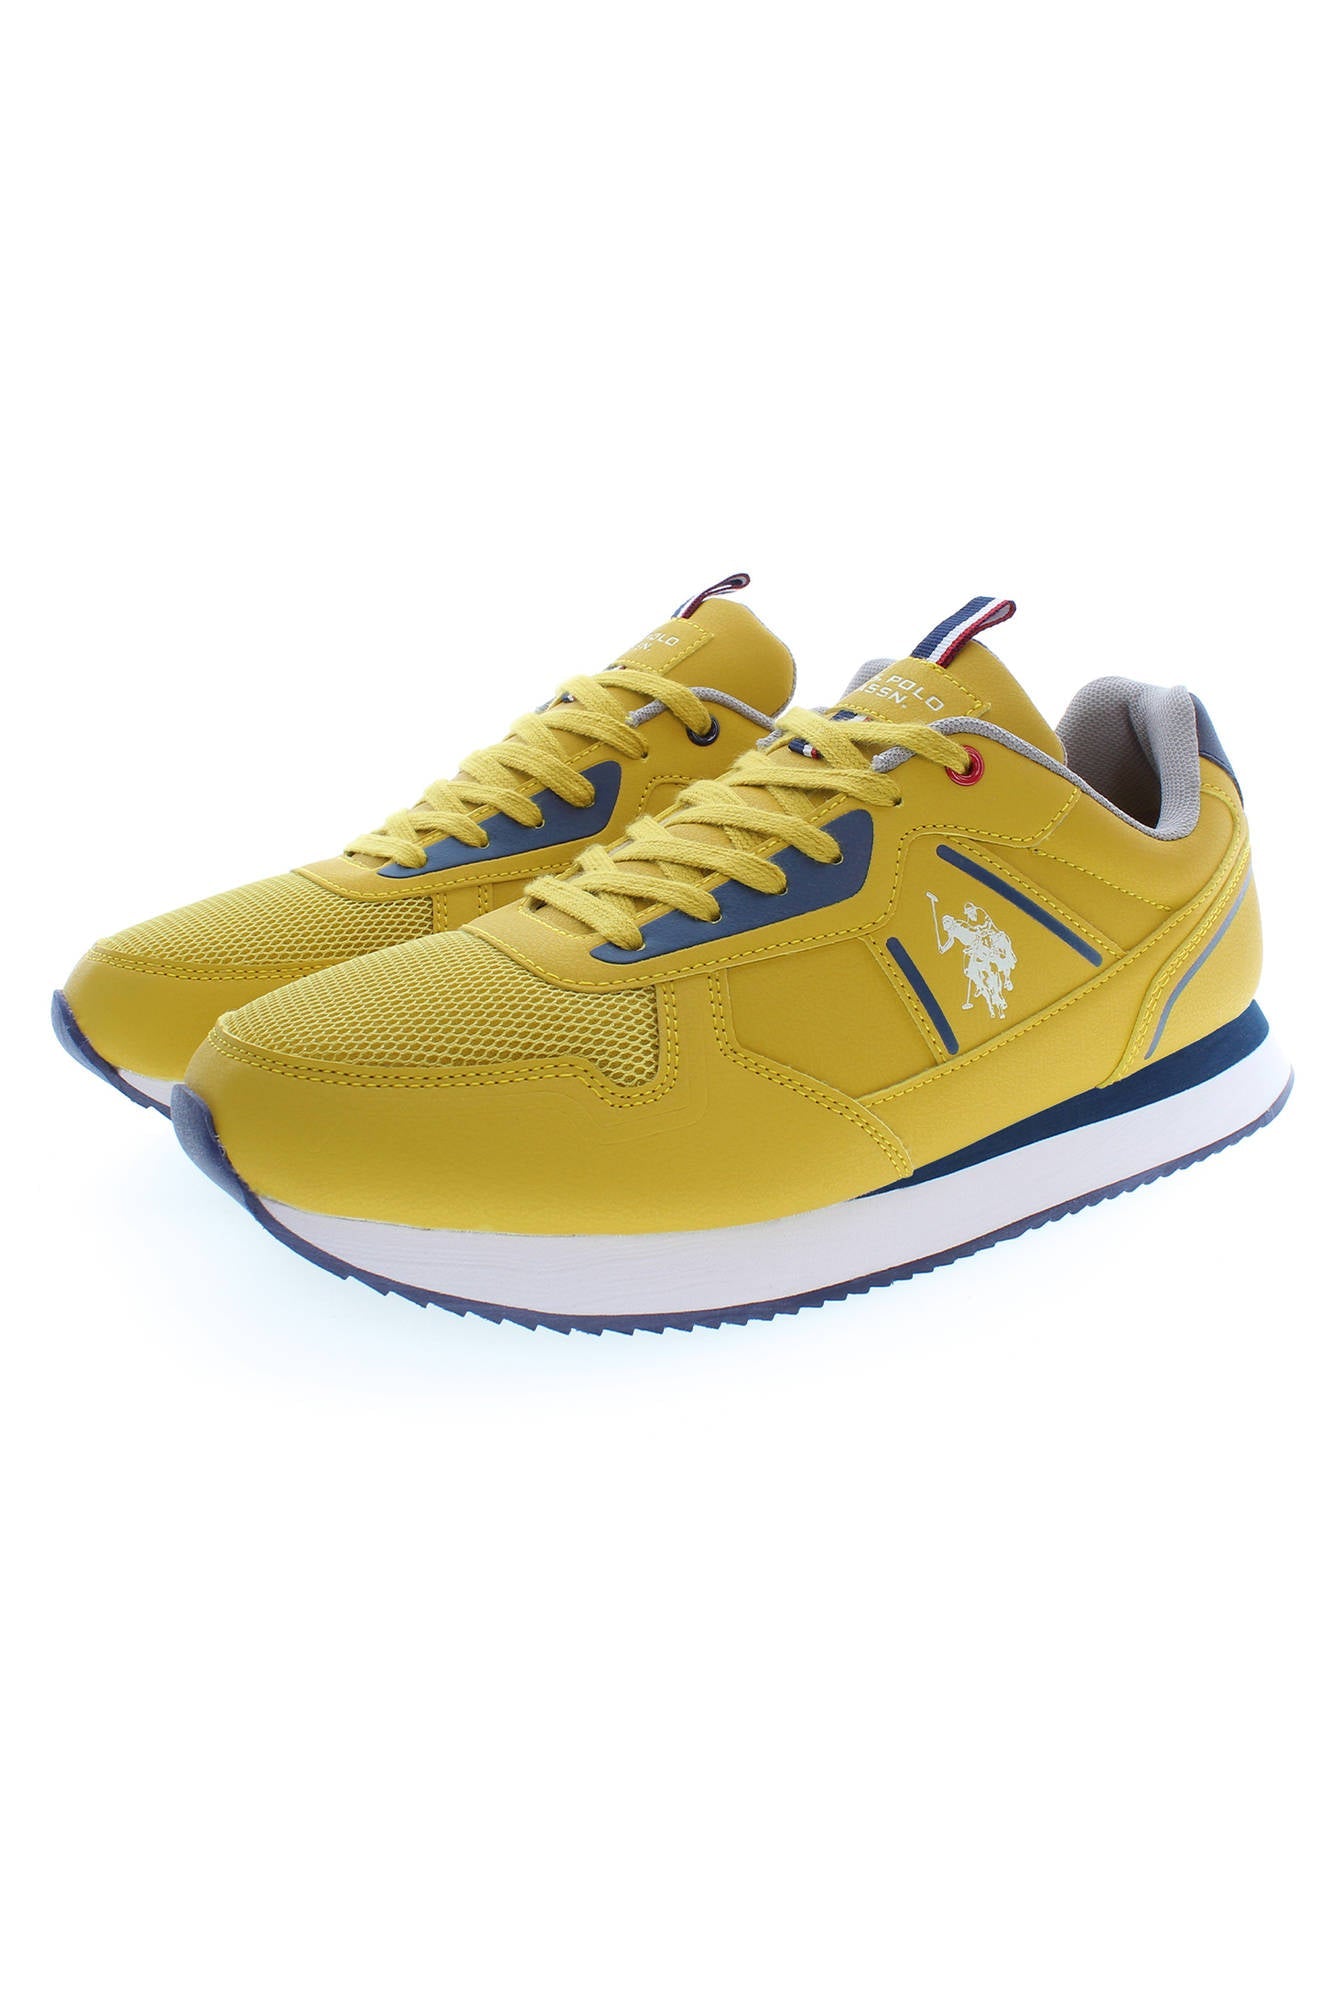 U.S. POLO ASSN. Yellow Sneakers - Fizigo